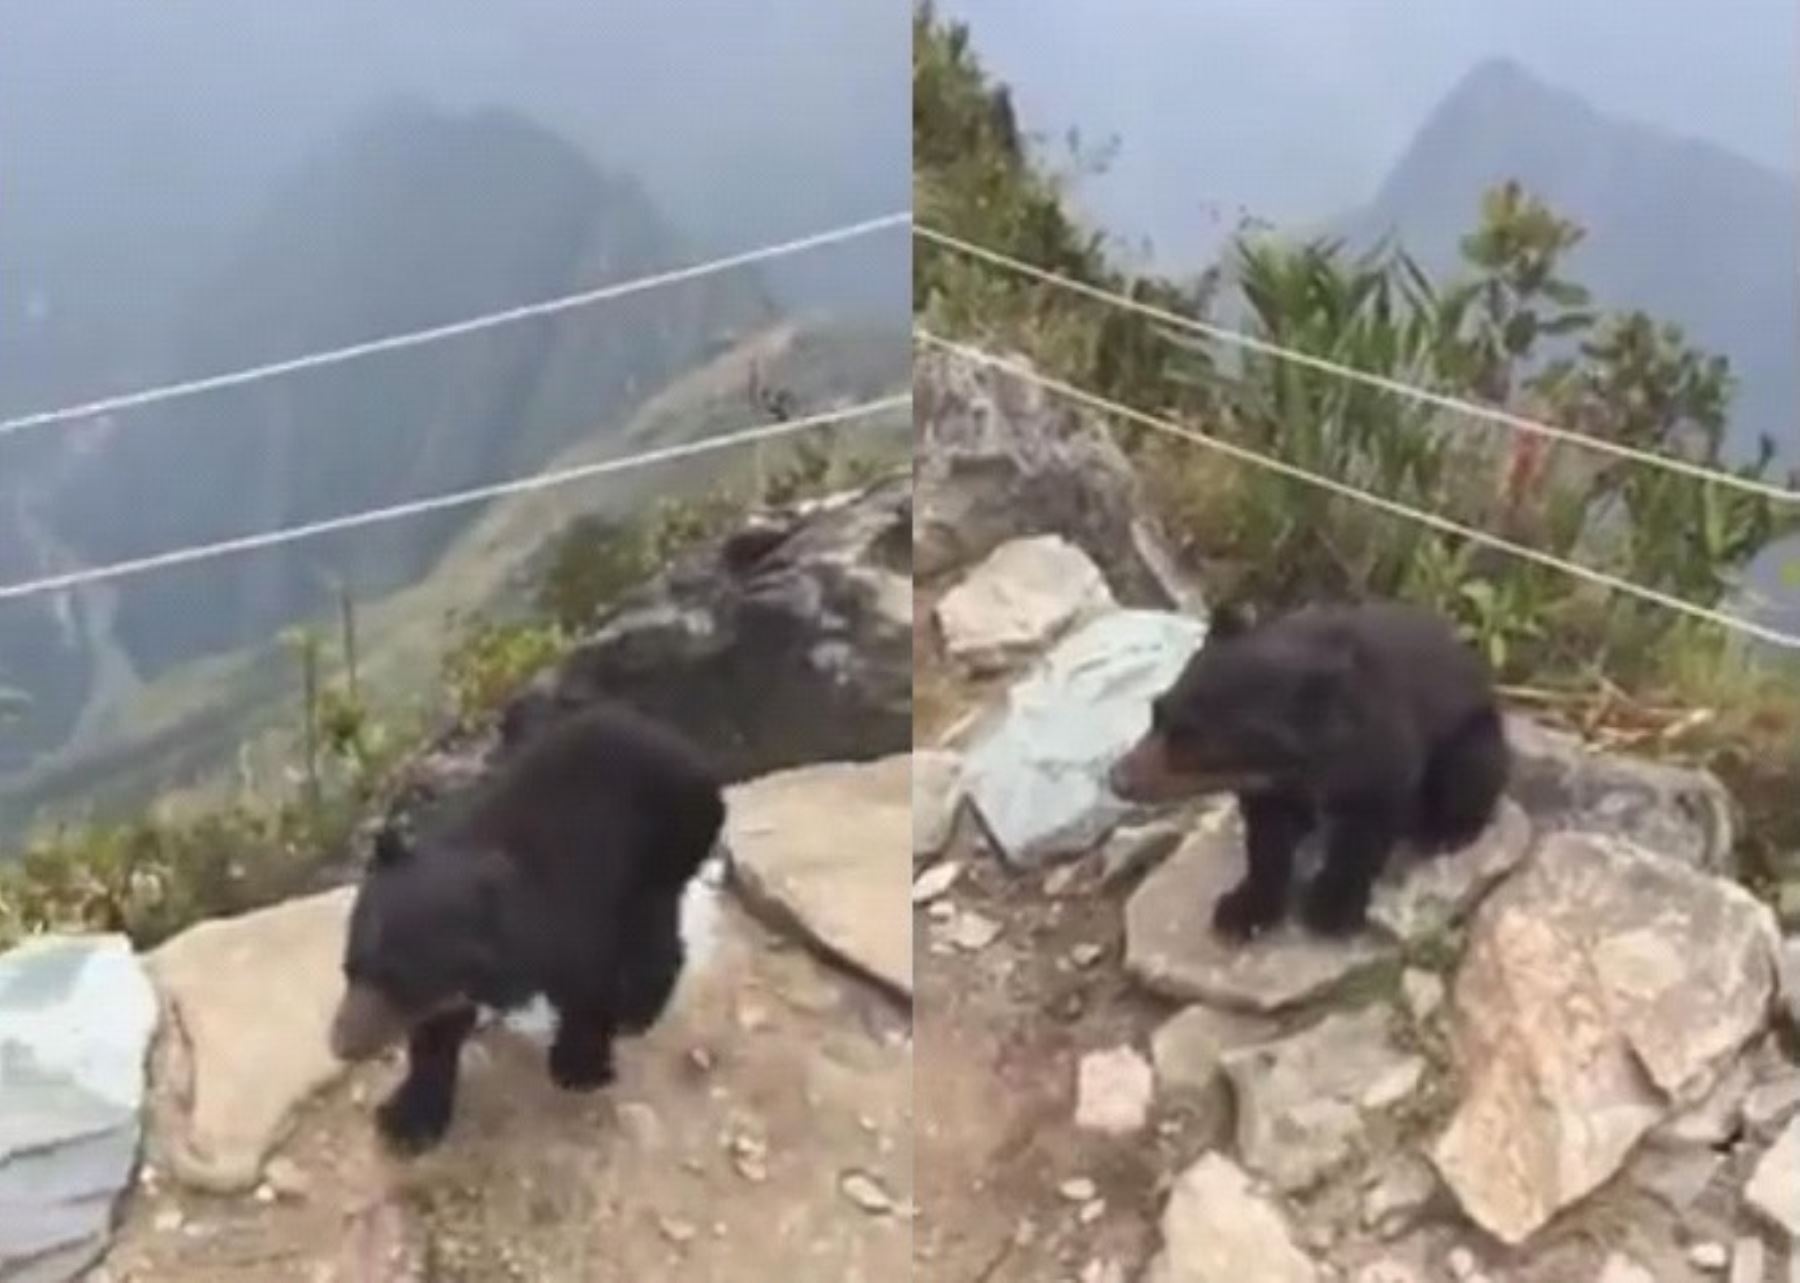 Turistas celebran aparición de oso andino bebé en Machu Picchu. Foto: Captura de video/Facebook.